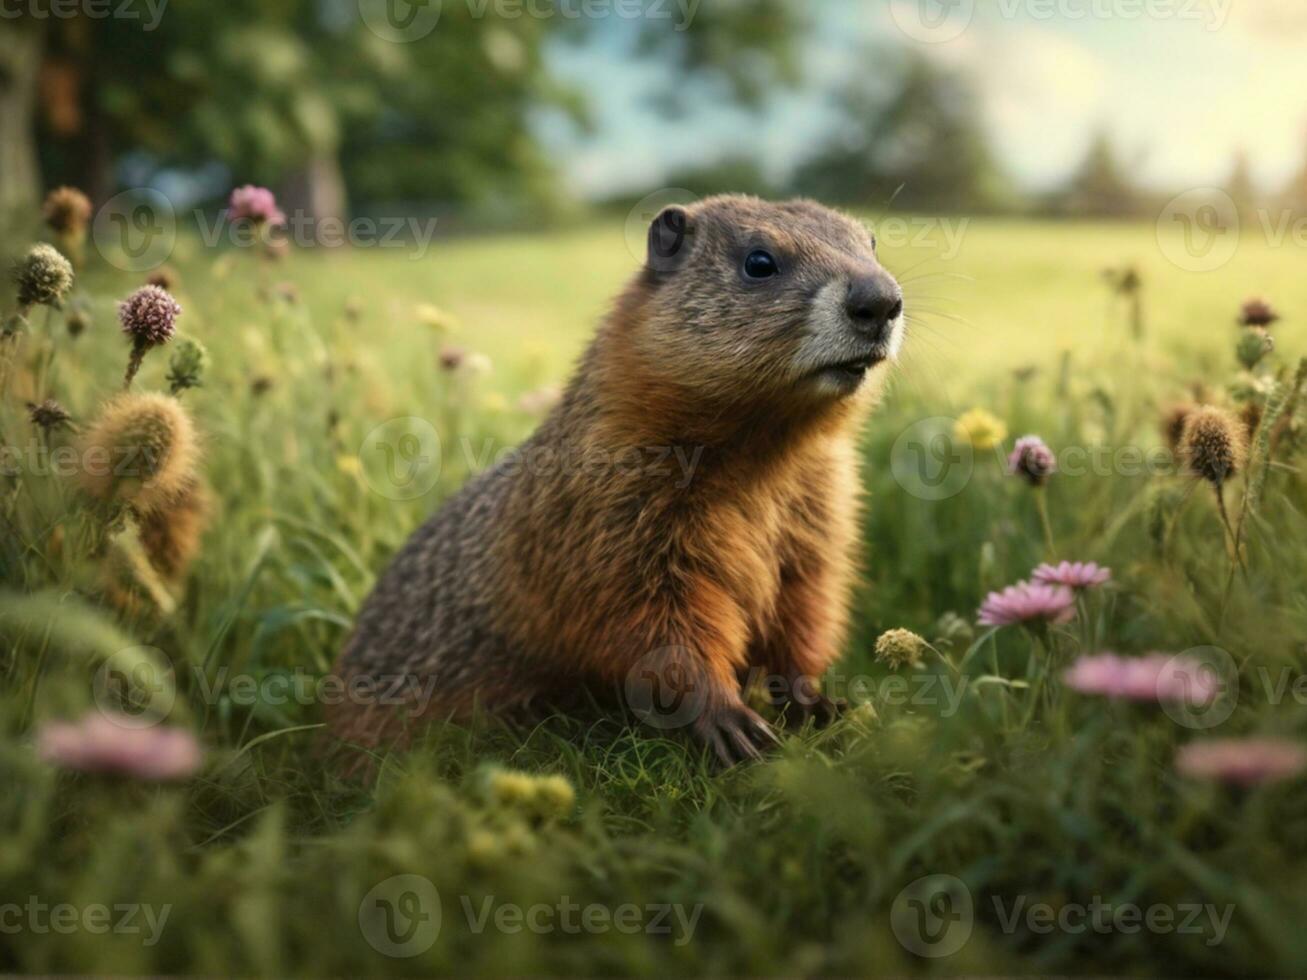 Groundhog in grass field garden  on Groundhog Day photo